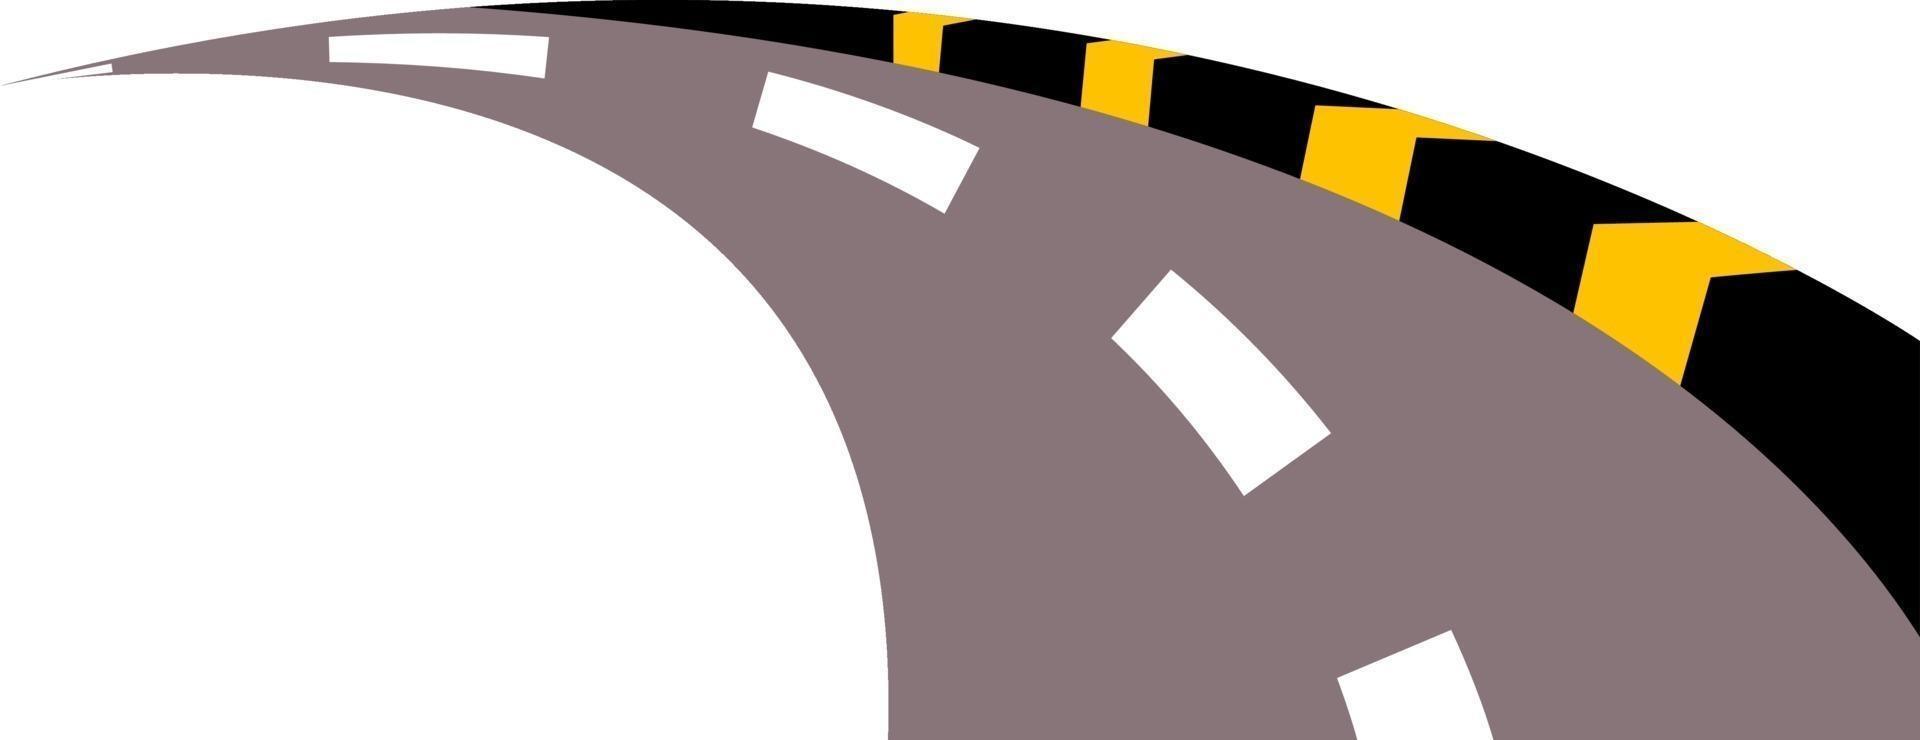 camino de la calle, ilustración, vector sobre fondo blanco